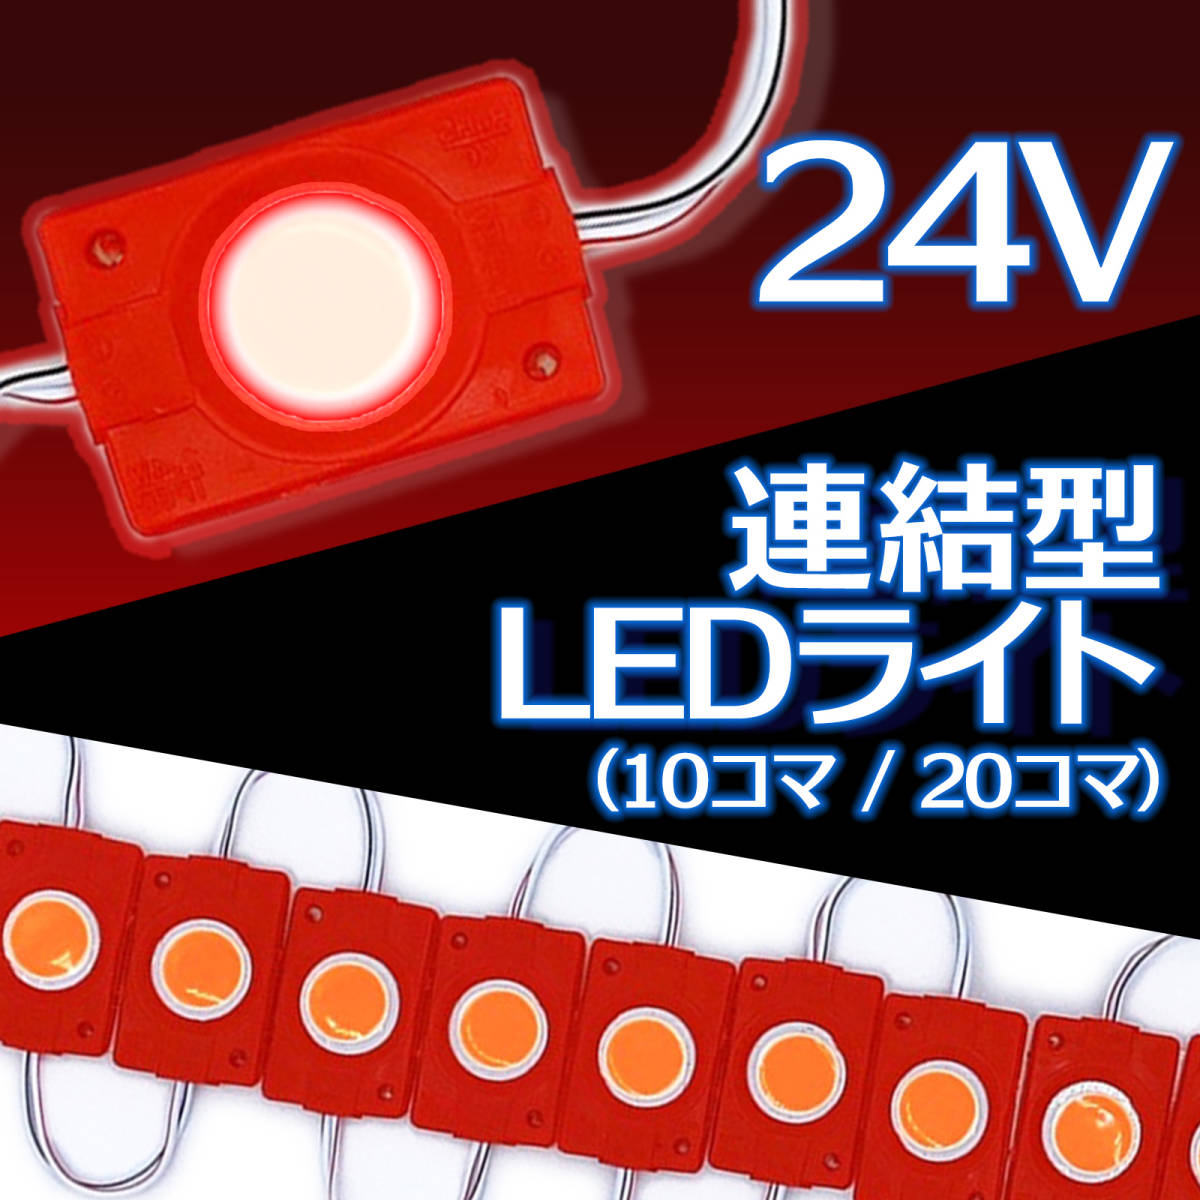 連結 LED ライト 24V 10コマ レッド COB トラック デコトラ タイヤ灯 アンダー ライト サイド マーカー ダウン ランプ 路肩灯 汎用 S25_画像1